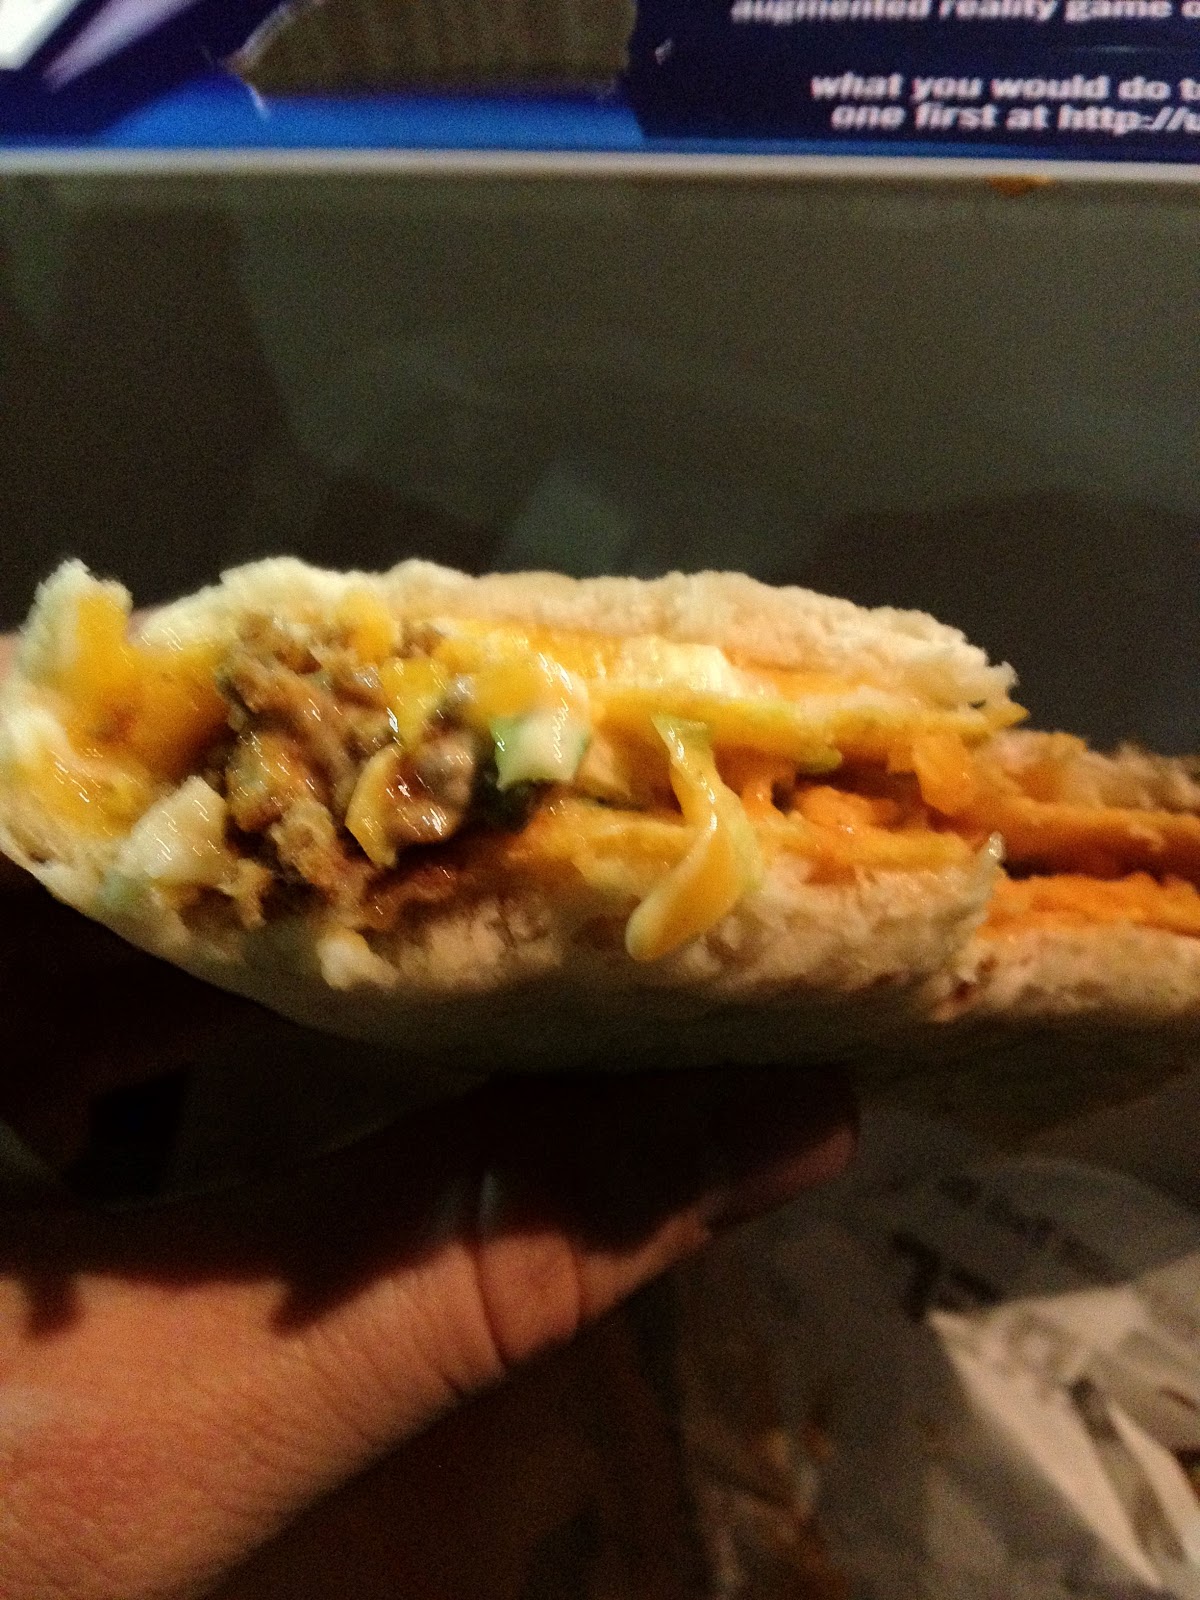 taco bell cheesy gordita crunch